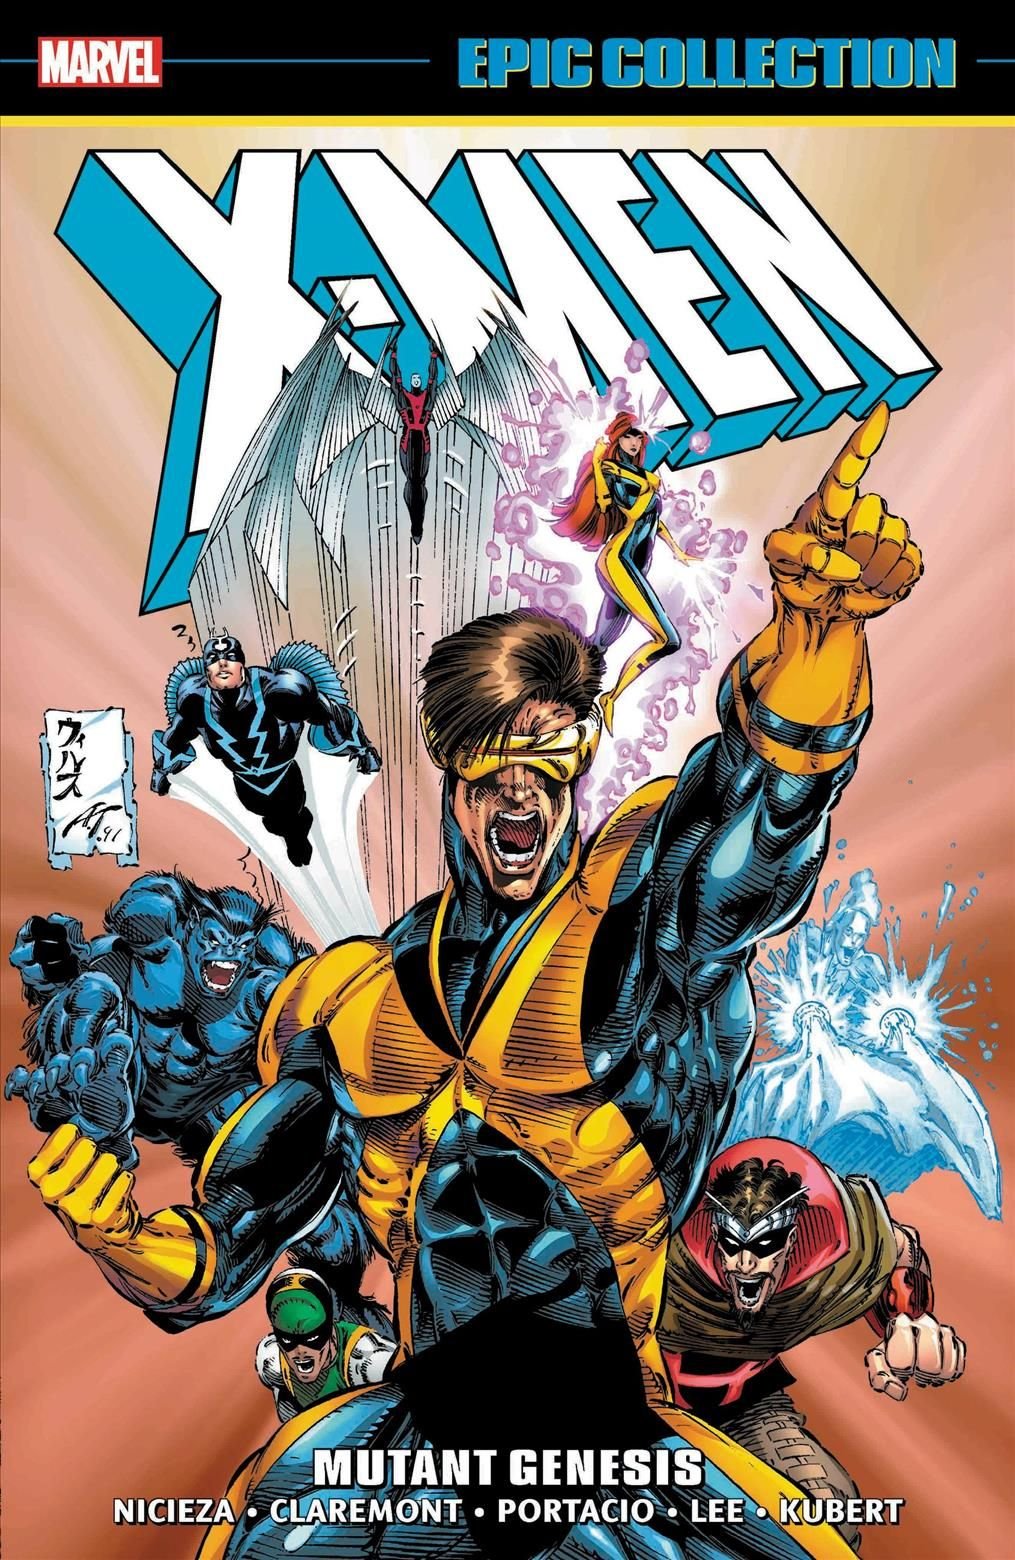 Héros sans série fixe (X-Men Epic Collection 4)